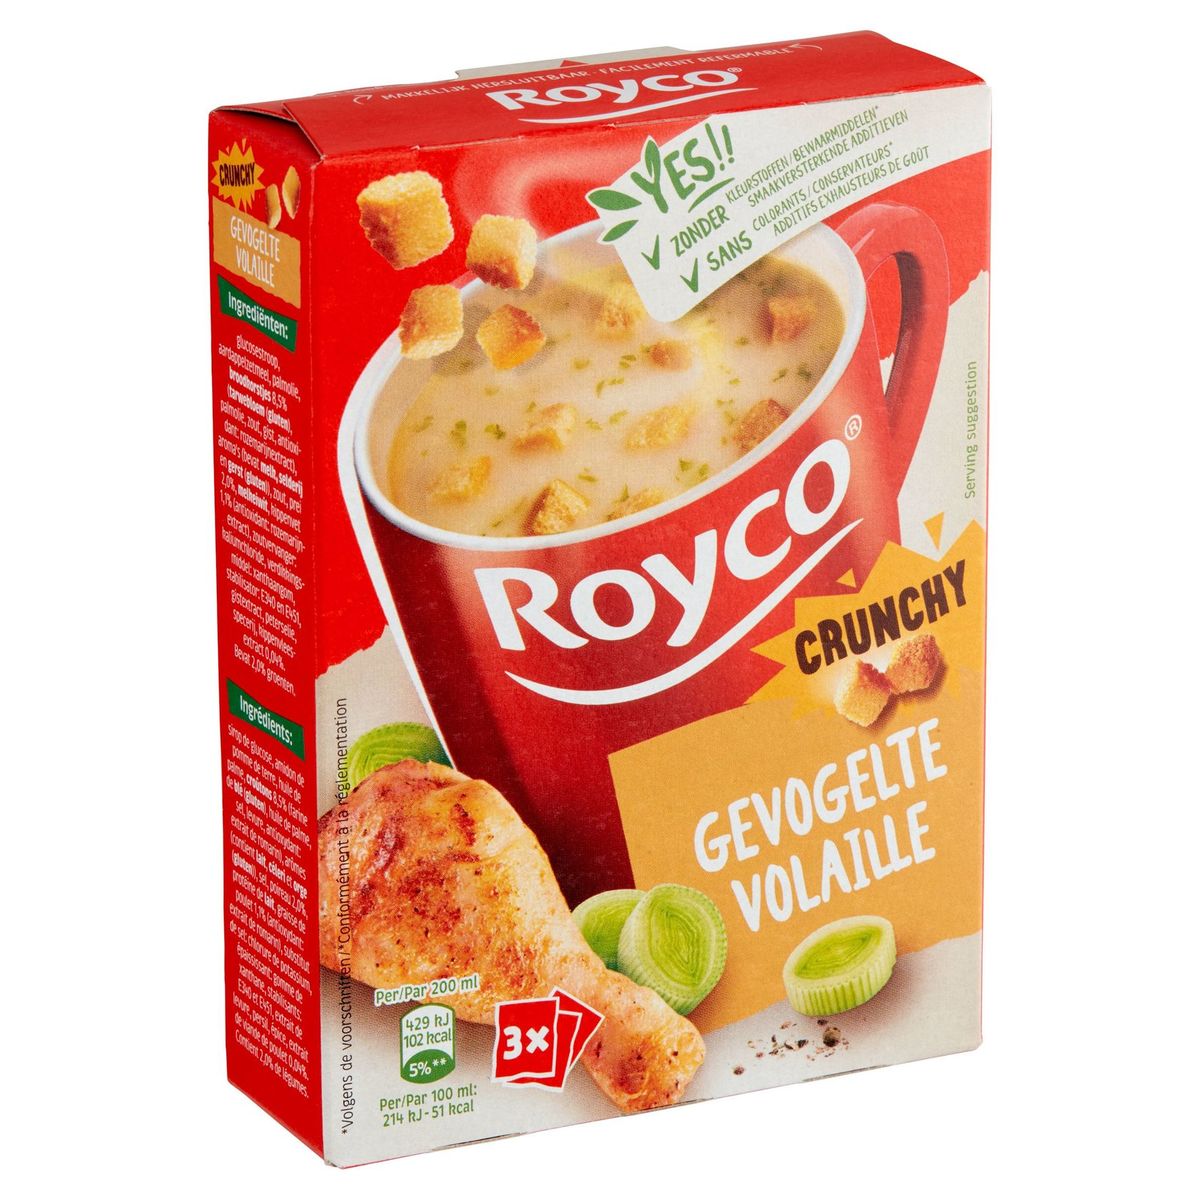 Royco Crunchy Volaille 3 x 20.5 g